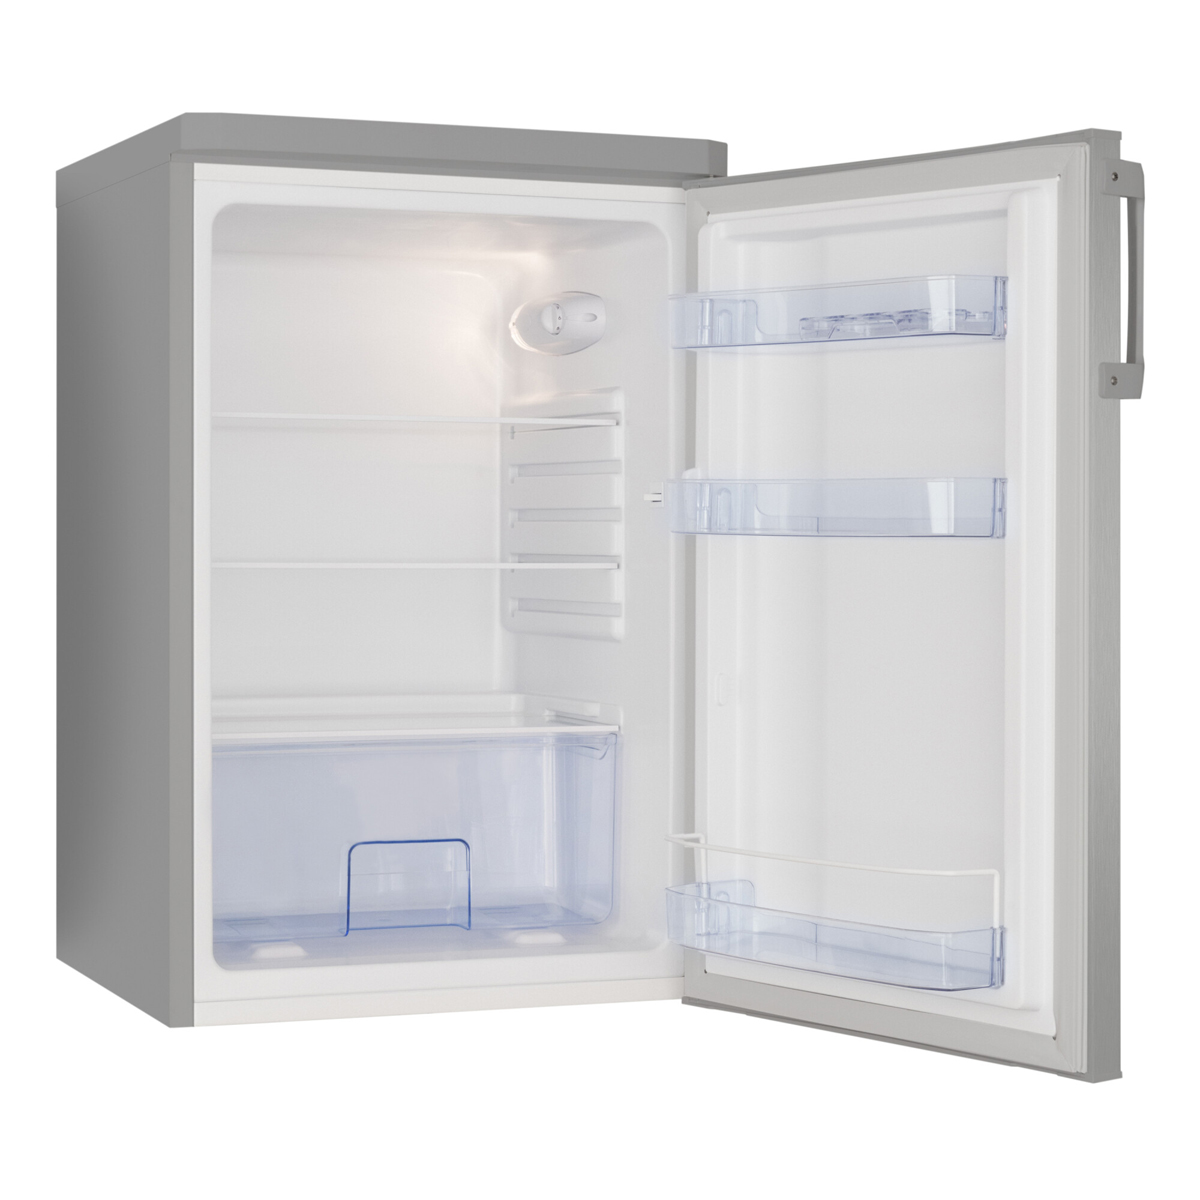 AMICA Vollraumkühlschrank Silber 120 cm Edelstahloptik Kühlschrank (E, Kühlschrank Silber) hoch, L freistehend 84,5